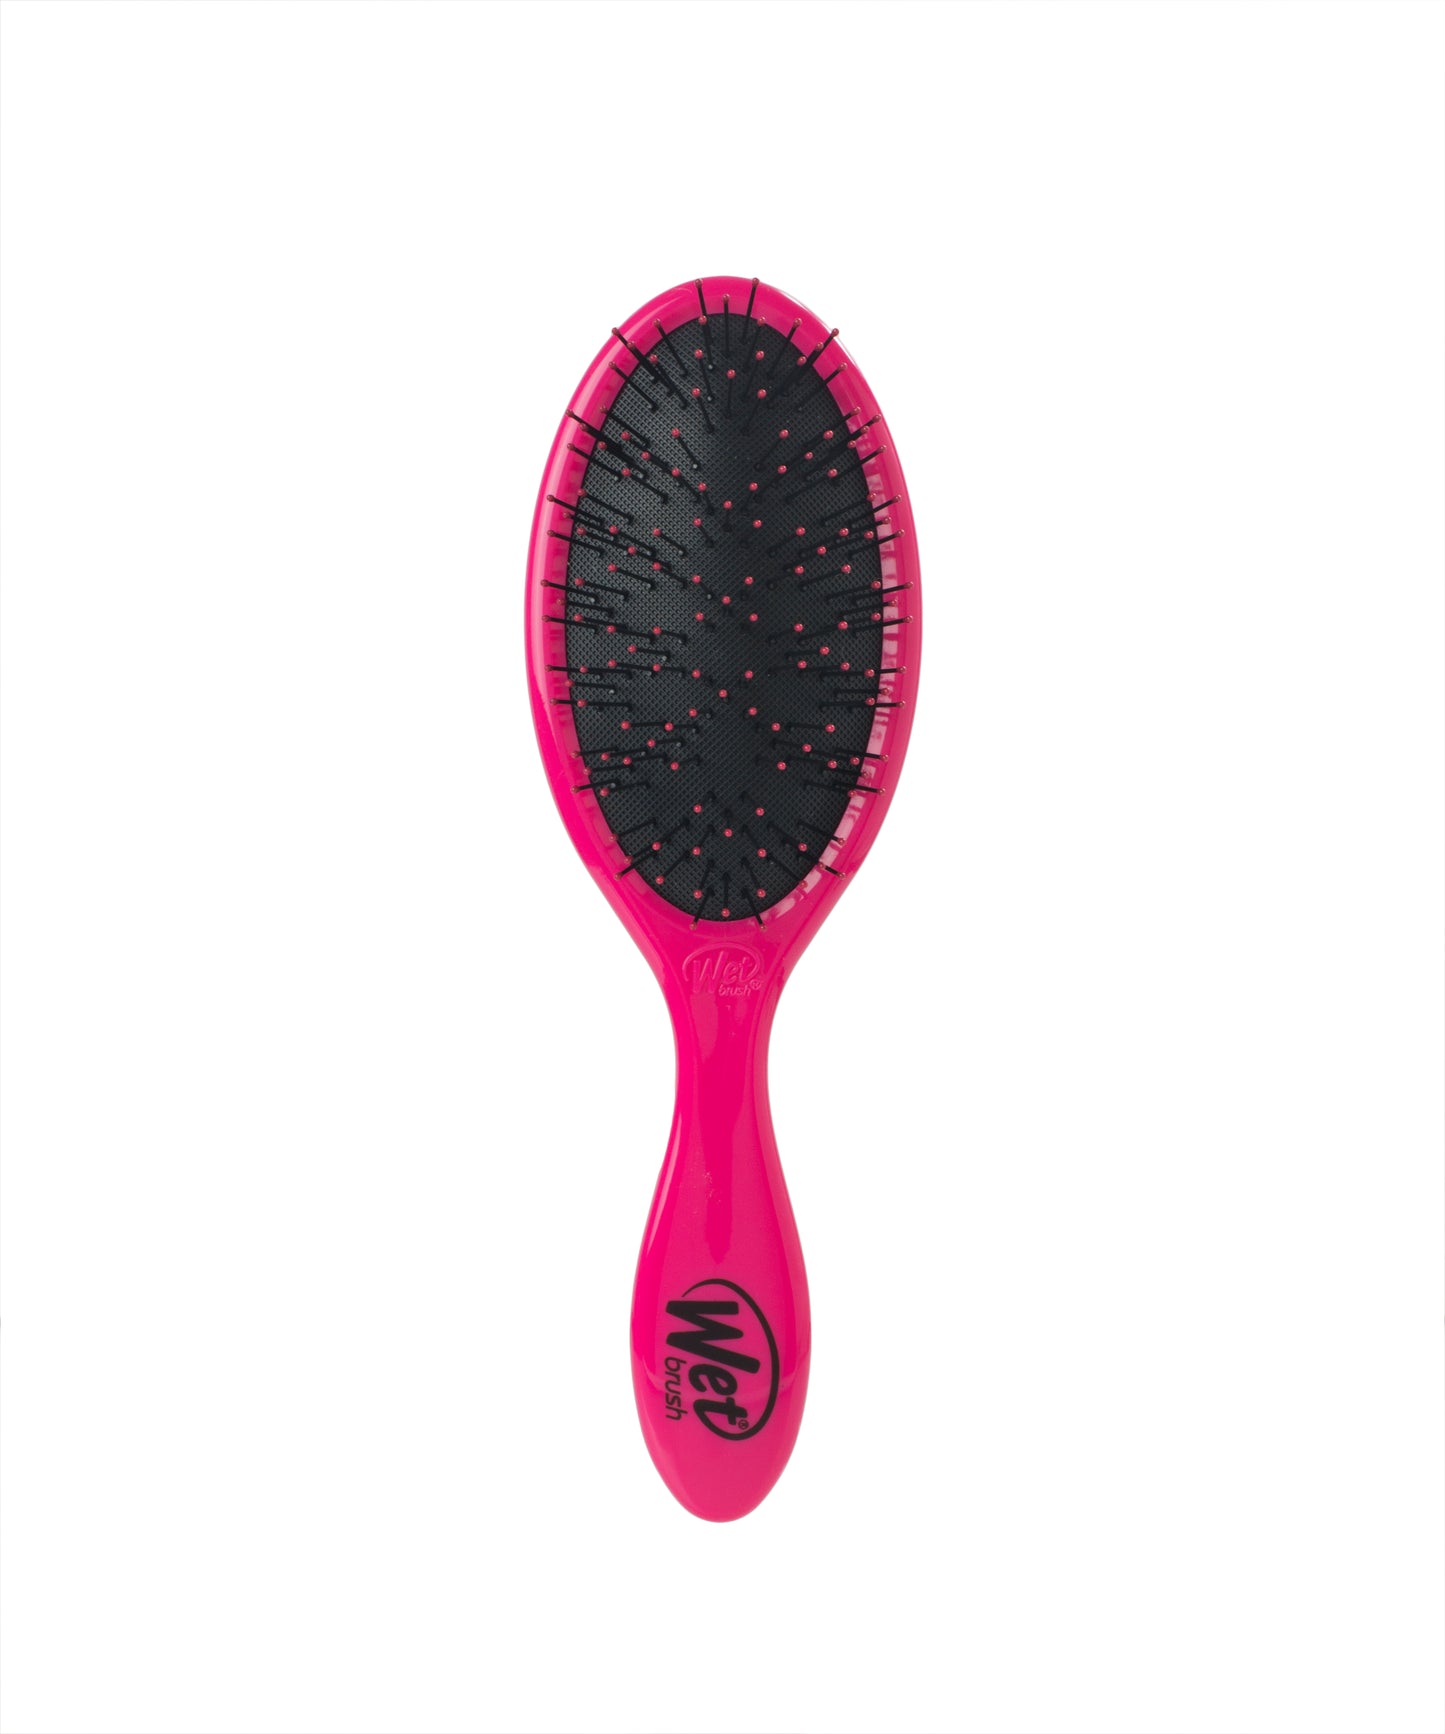 Wet Brush Original Detangler For Thick Hair - Pink